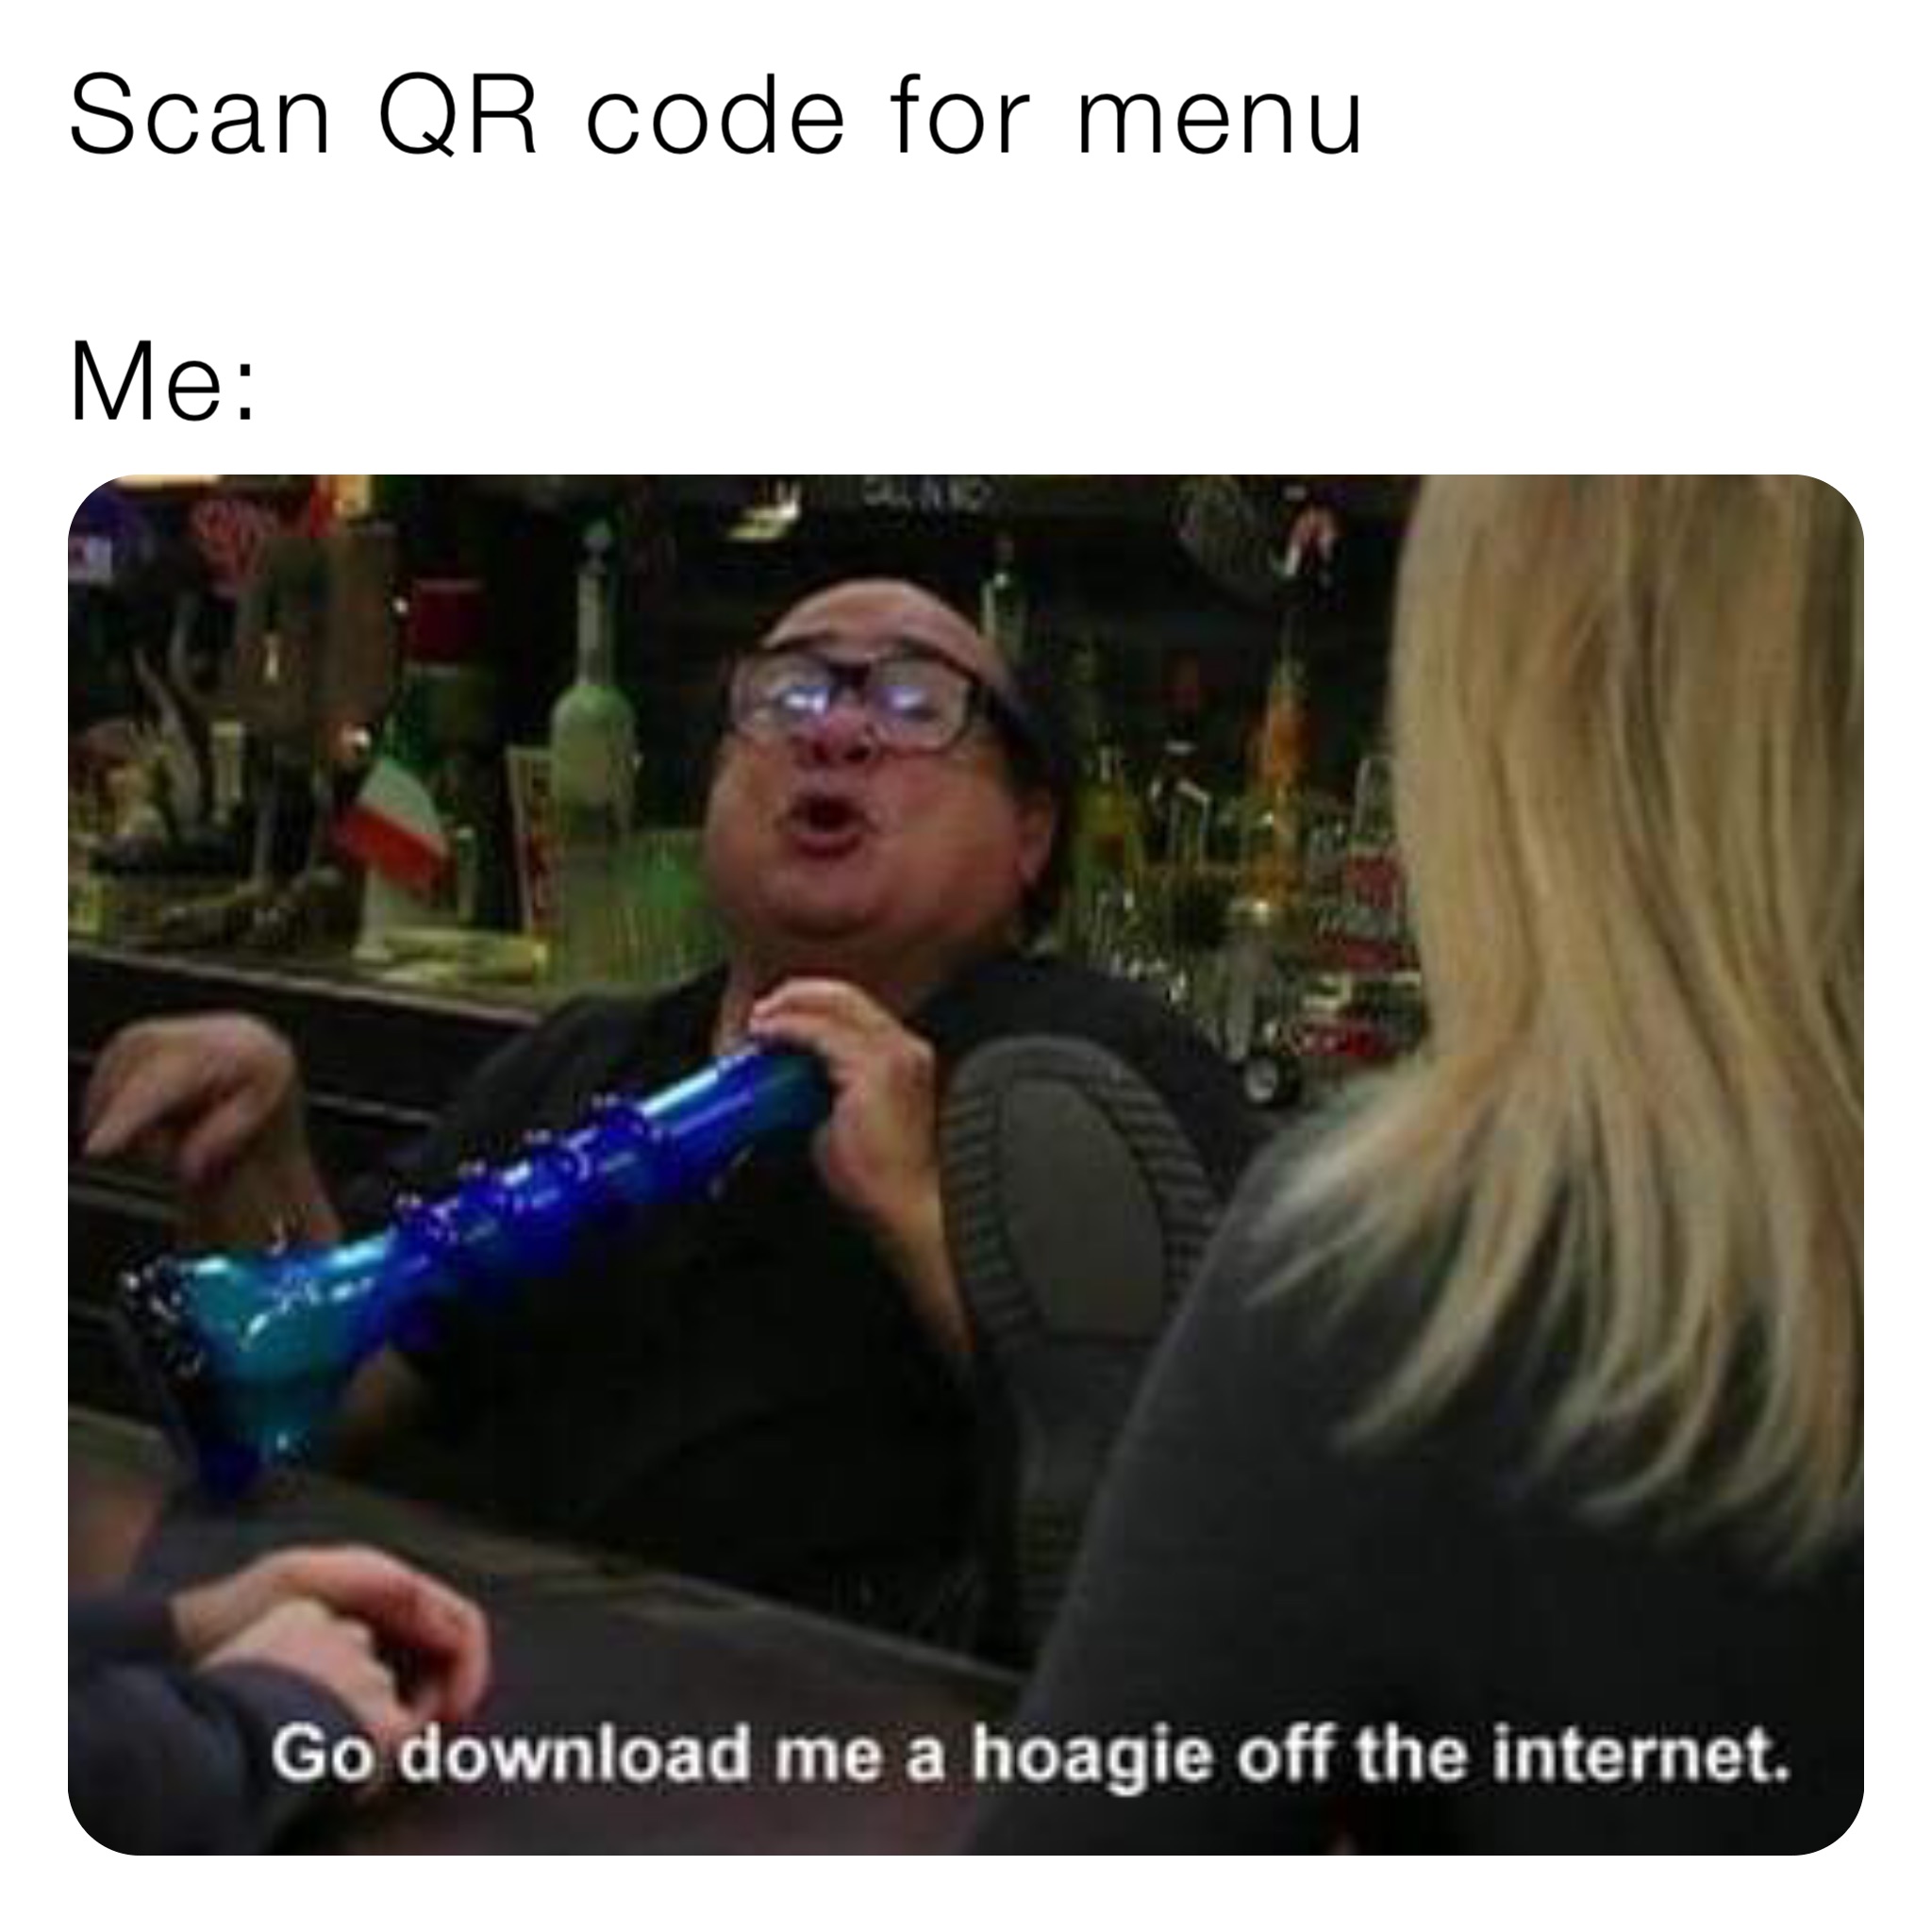 Scan QR code for menu

Me: